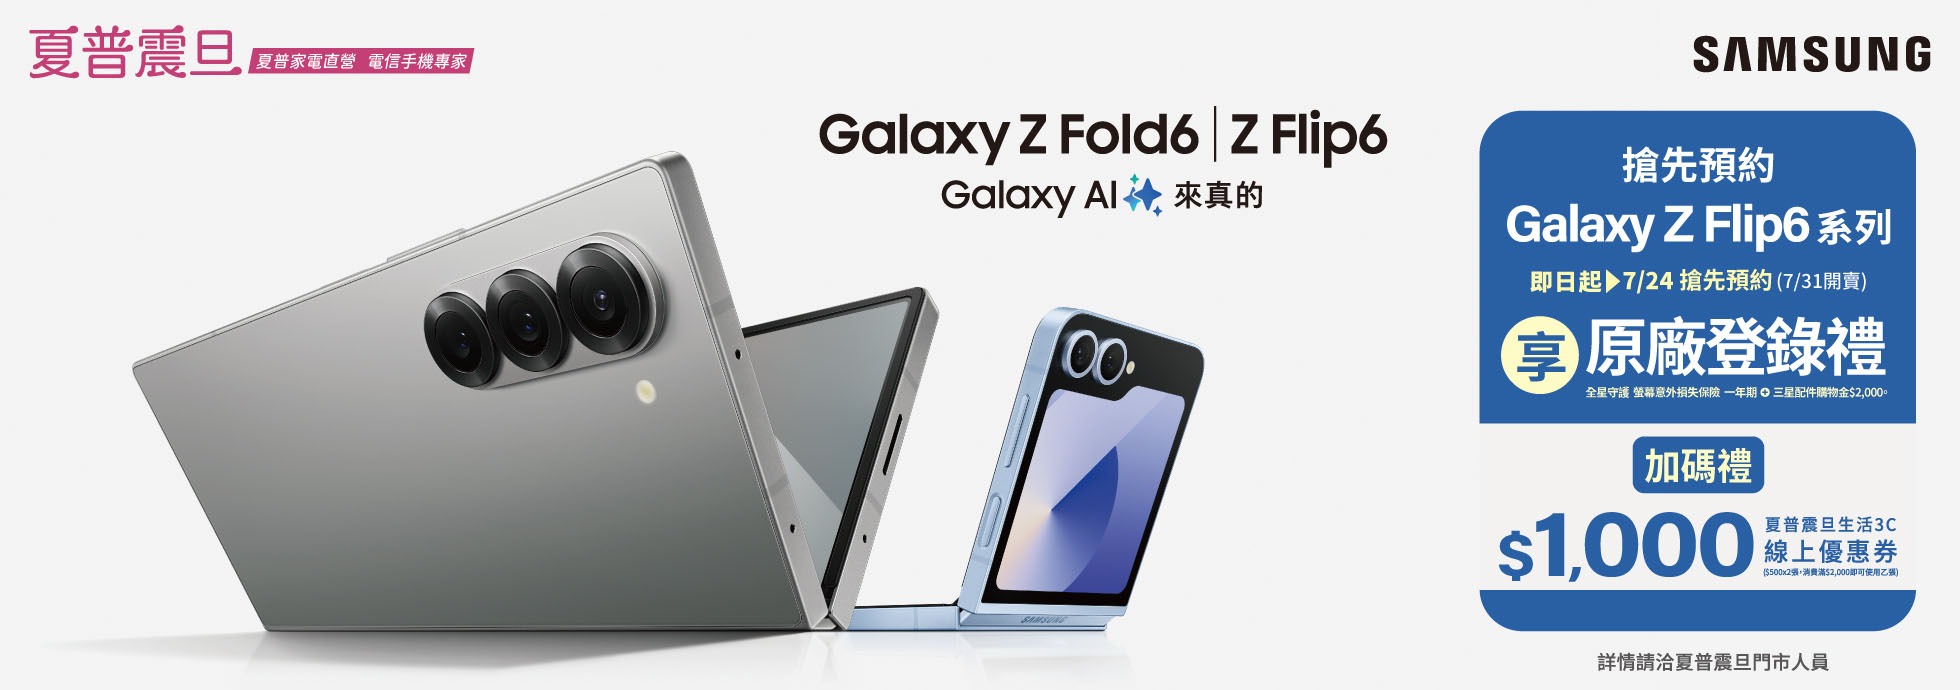 即日起搶先預約三星 Galaxy Z Fold6 享原廠登錄禮，加碼送夏普震旦生活3C優惠券1,000元。